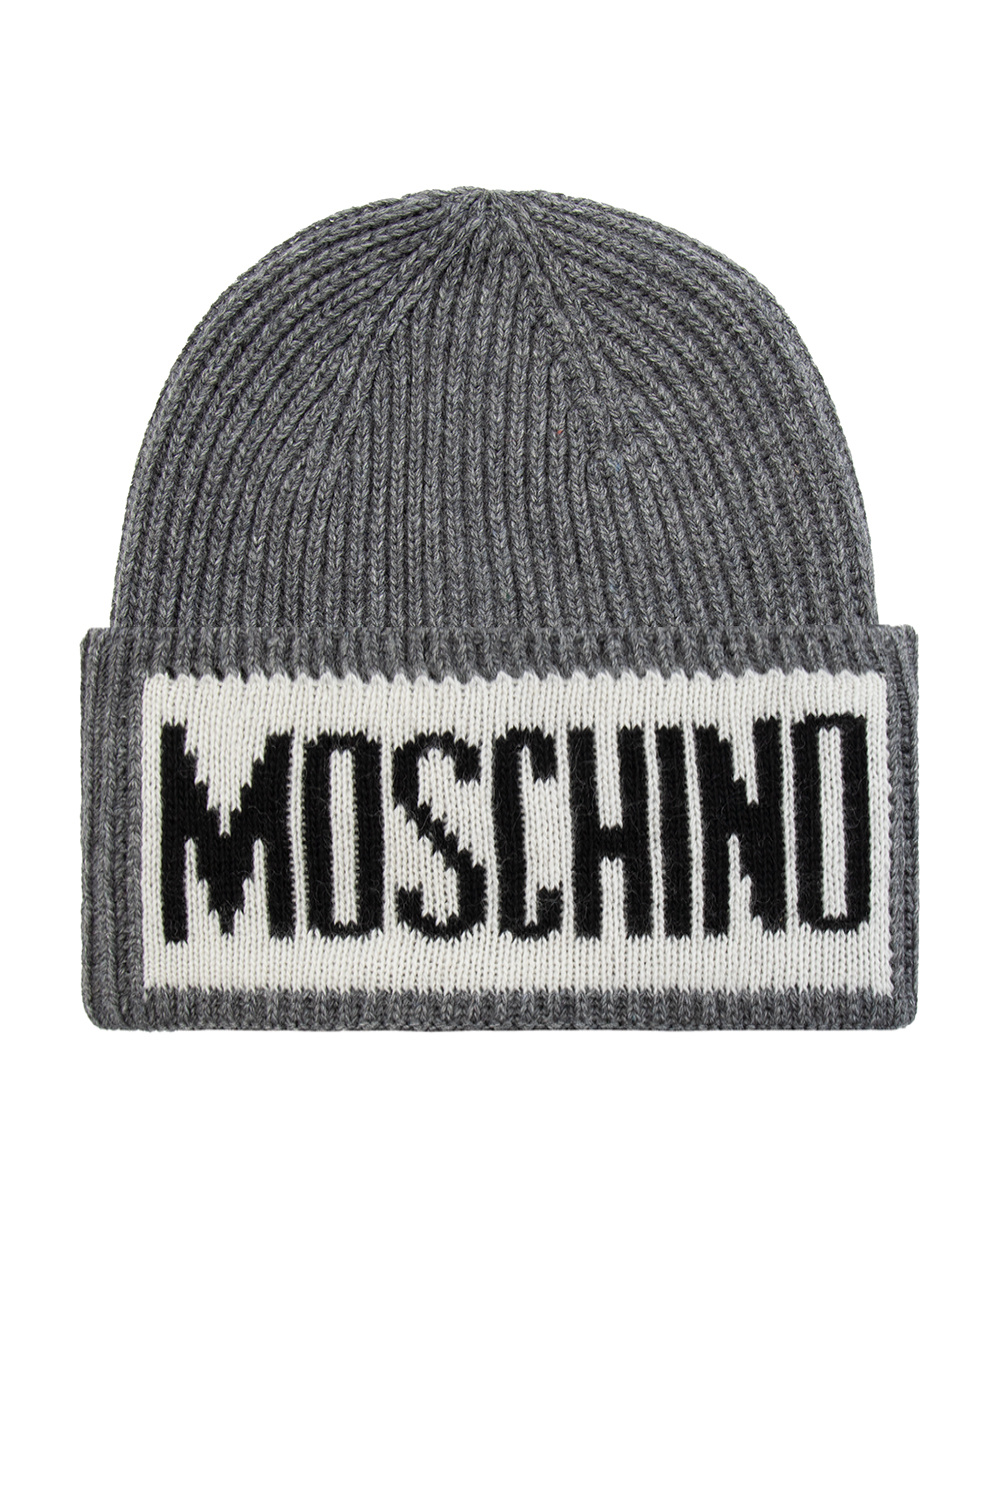 Grey Hat with logo Moschino - NEW ERA CAP Baseballkappe mit Le Louvre  Liberte-Print Schwarz - IetpShops Canada